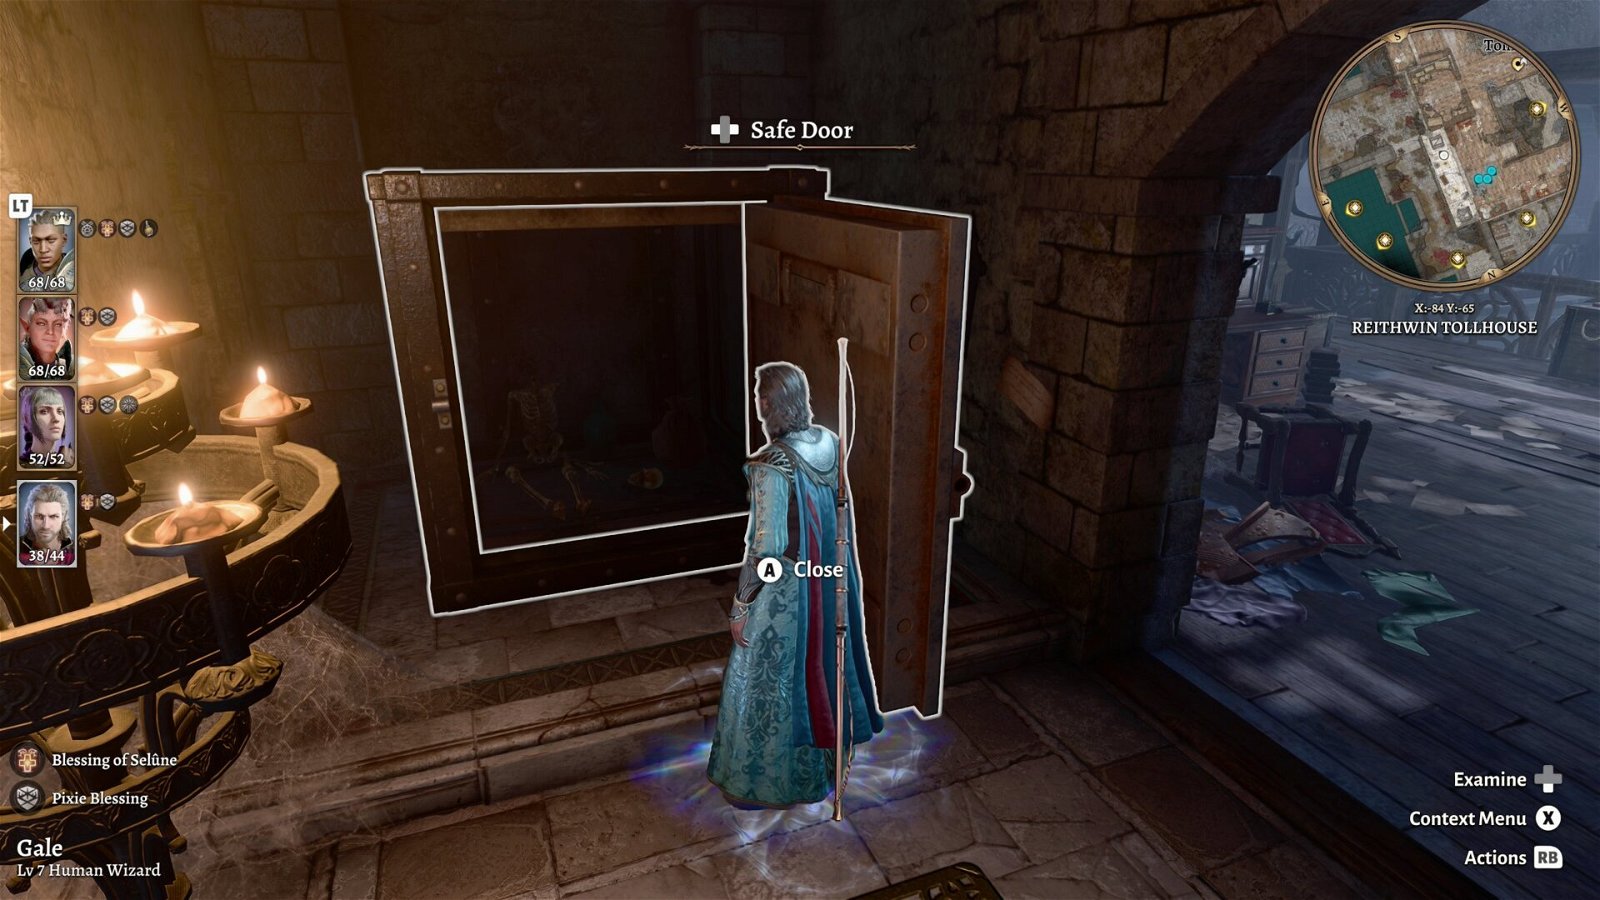 Baldur's Gate 3 - Opening the safe door finding the poor soul locked in